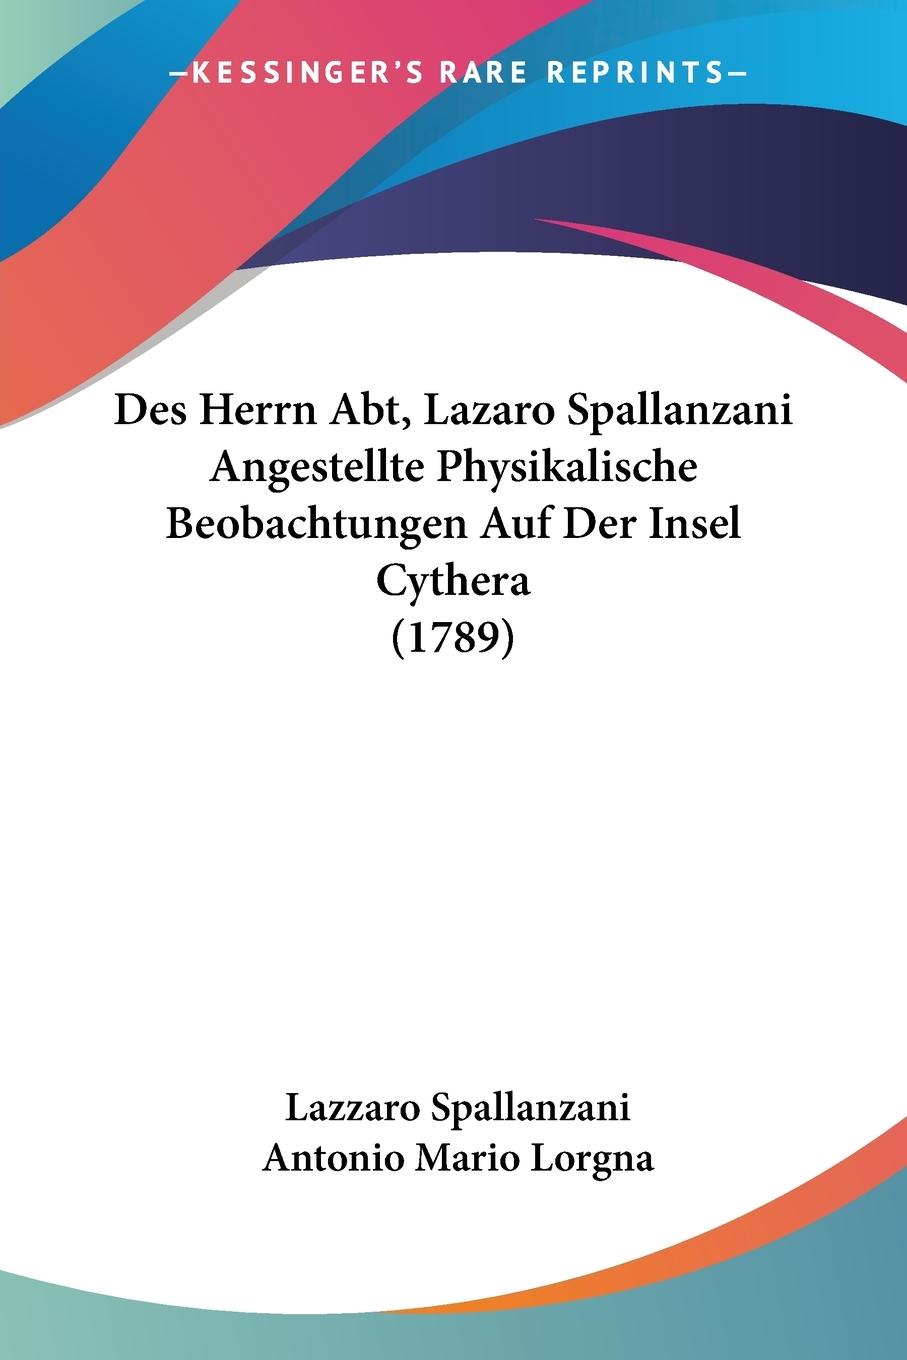 Des Herrn Abt, Lazaro Spallanzani Angestellte Physikalische Beobachtungen Auf Der Insel Cythera (1789) - Spallanzani, Lazzaro Lorgna, Antonio Mario